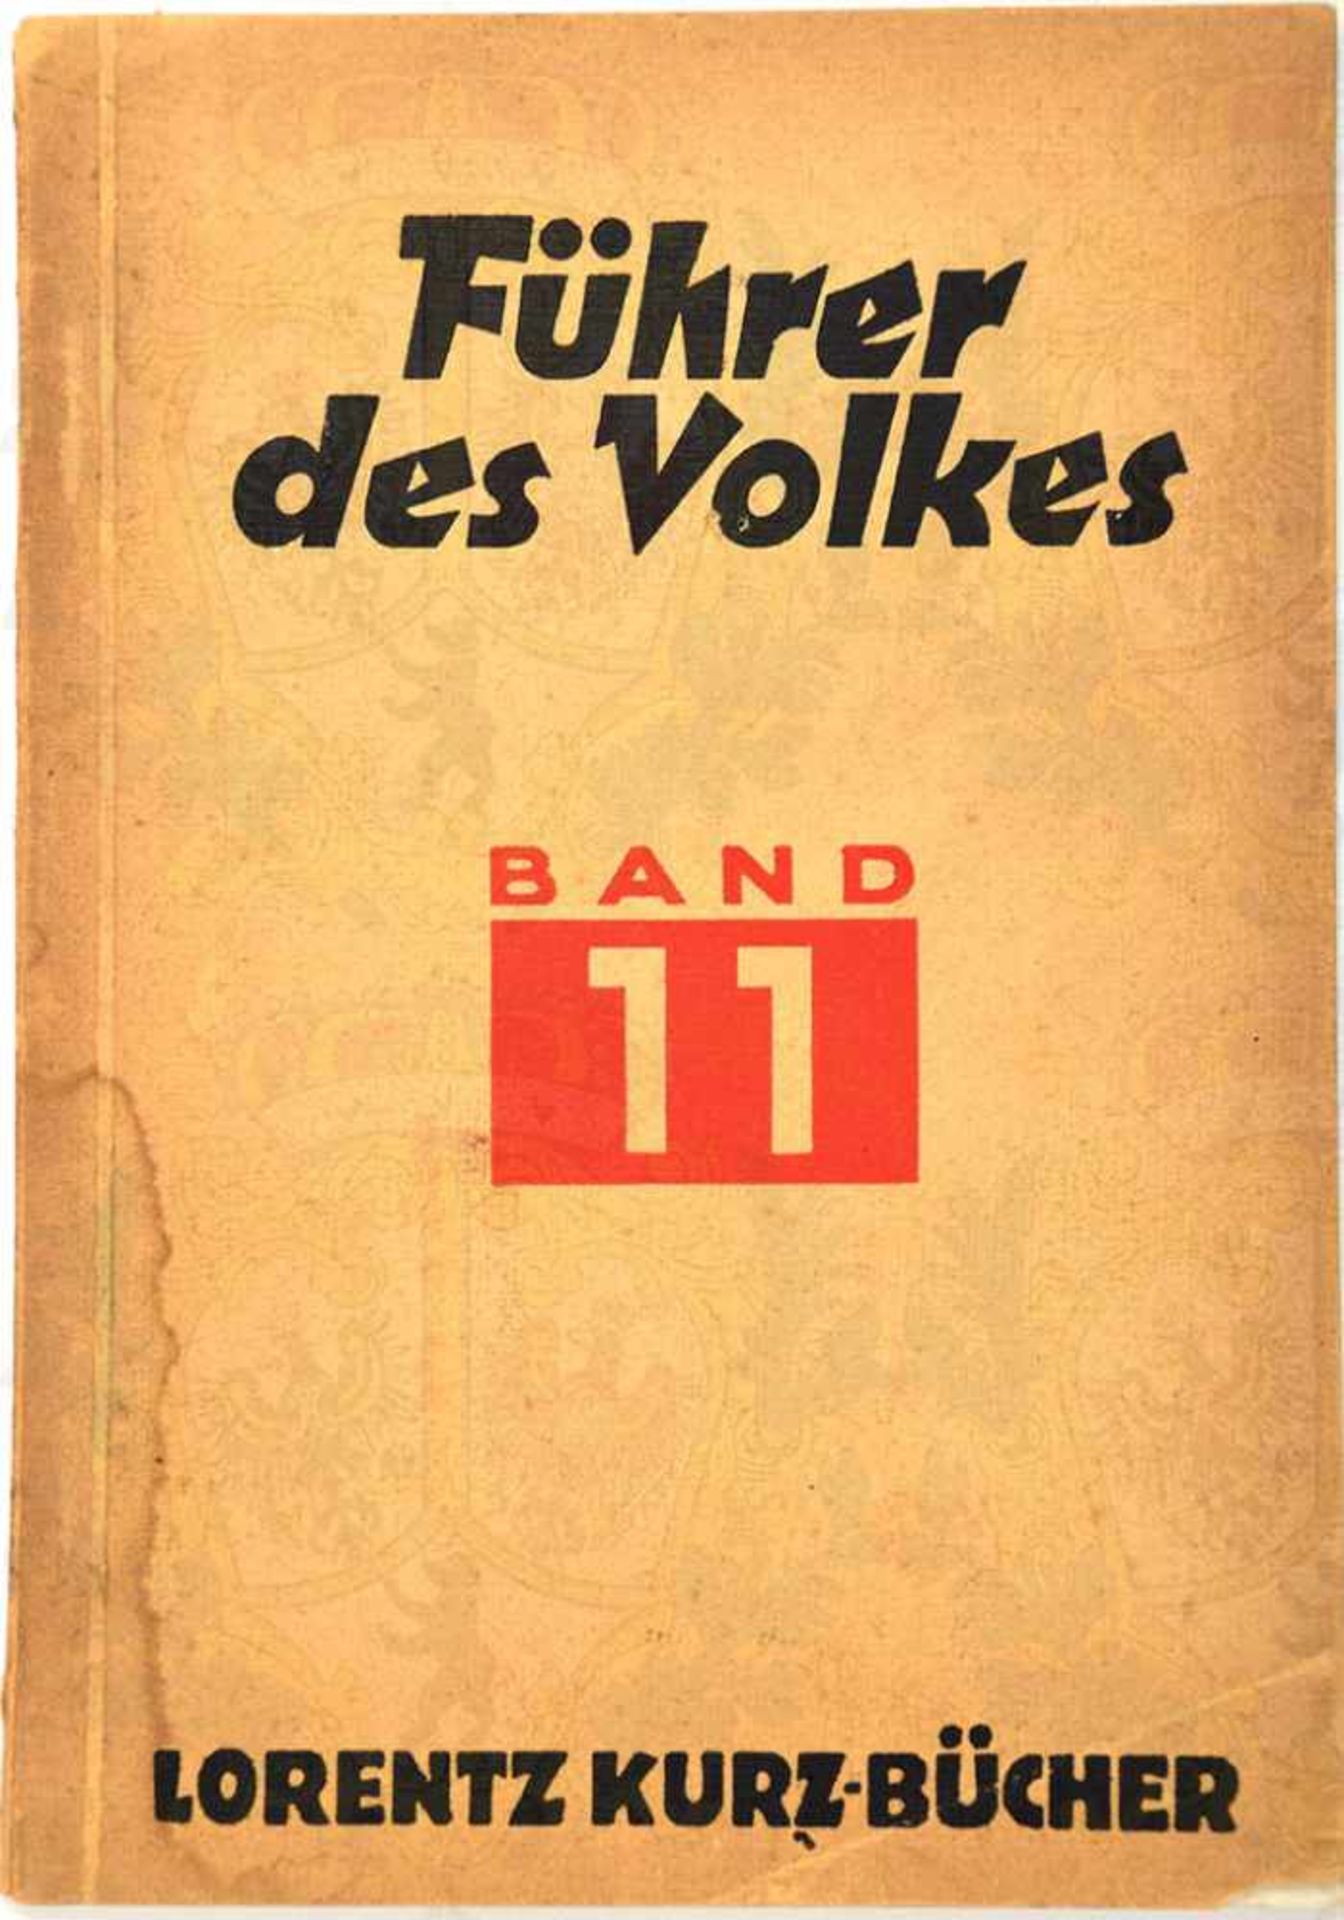 FÜHRER DES VOLKES, A. Greeven, Berlin 1933, Porträt u. Kurzbiographien d. Mitglieder der neuen